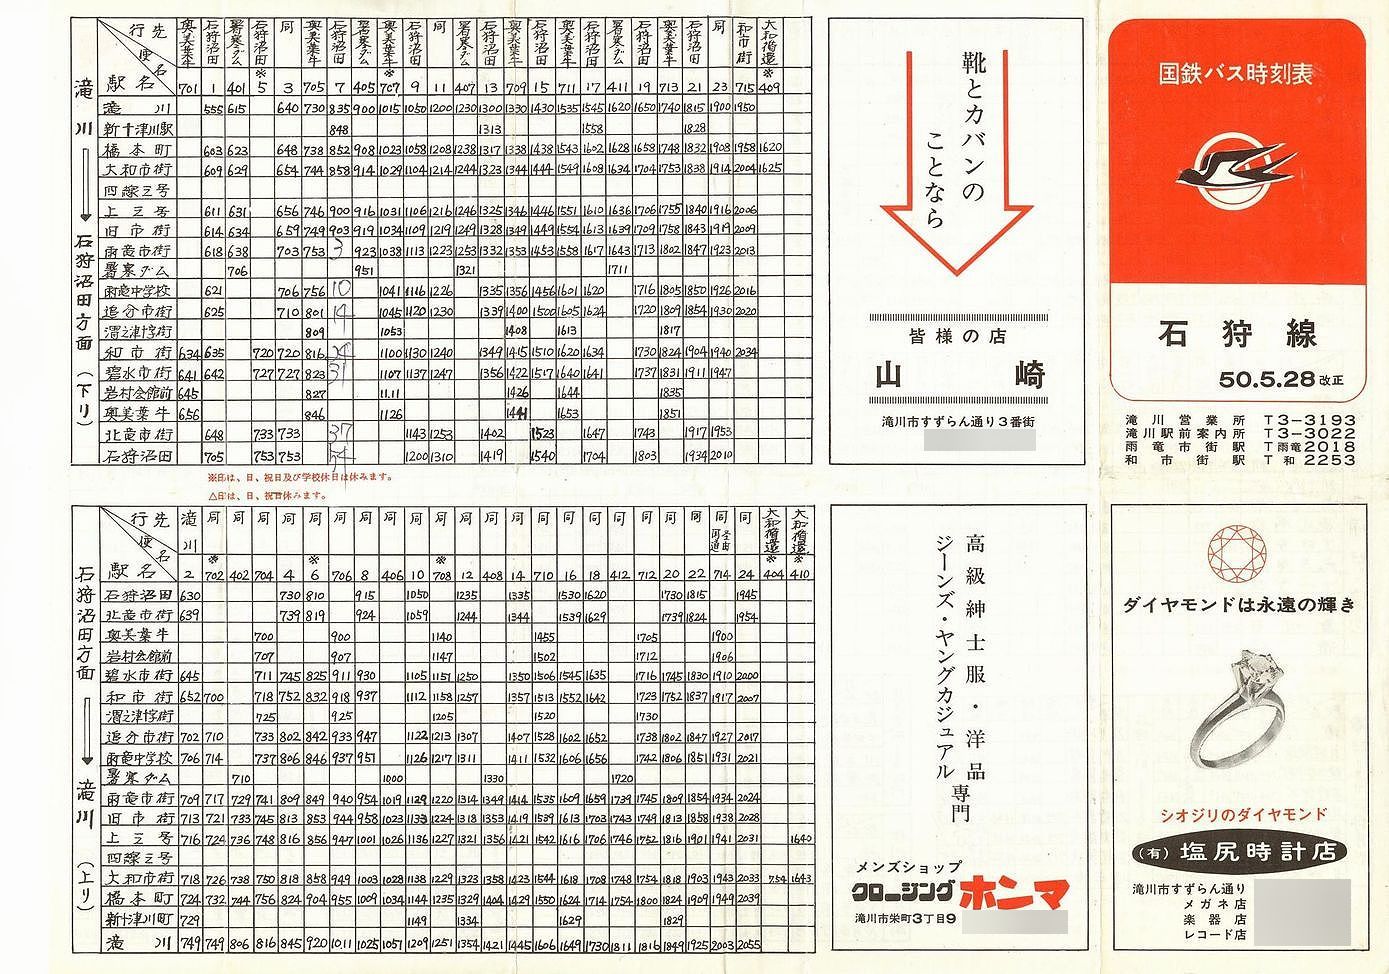 1975-05-28改正_国鉄バス_石狩線時刻表表面